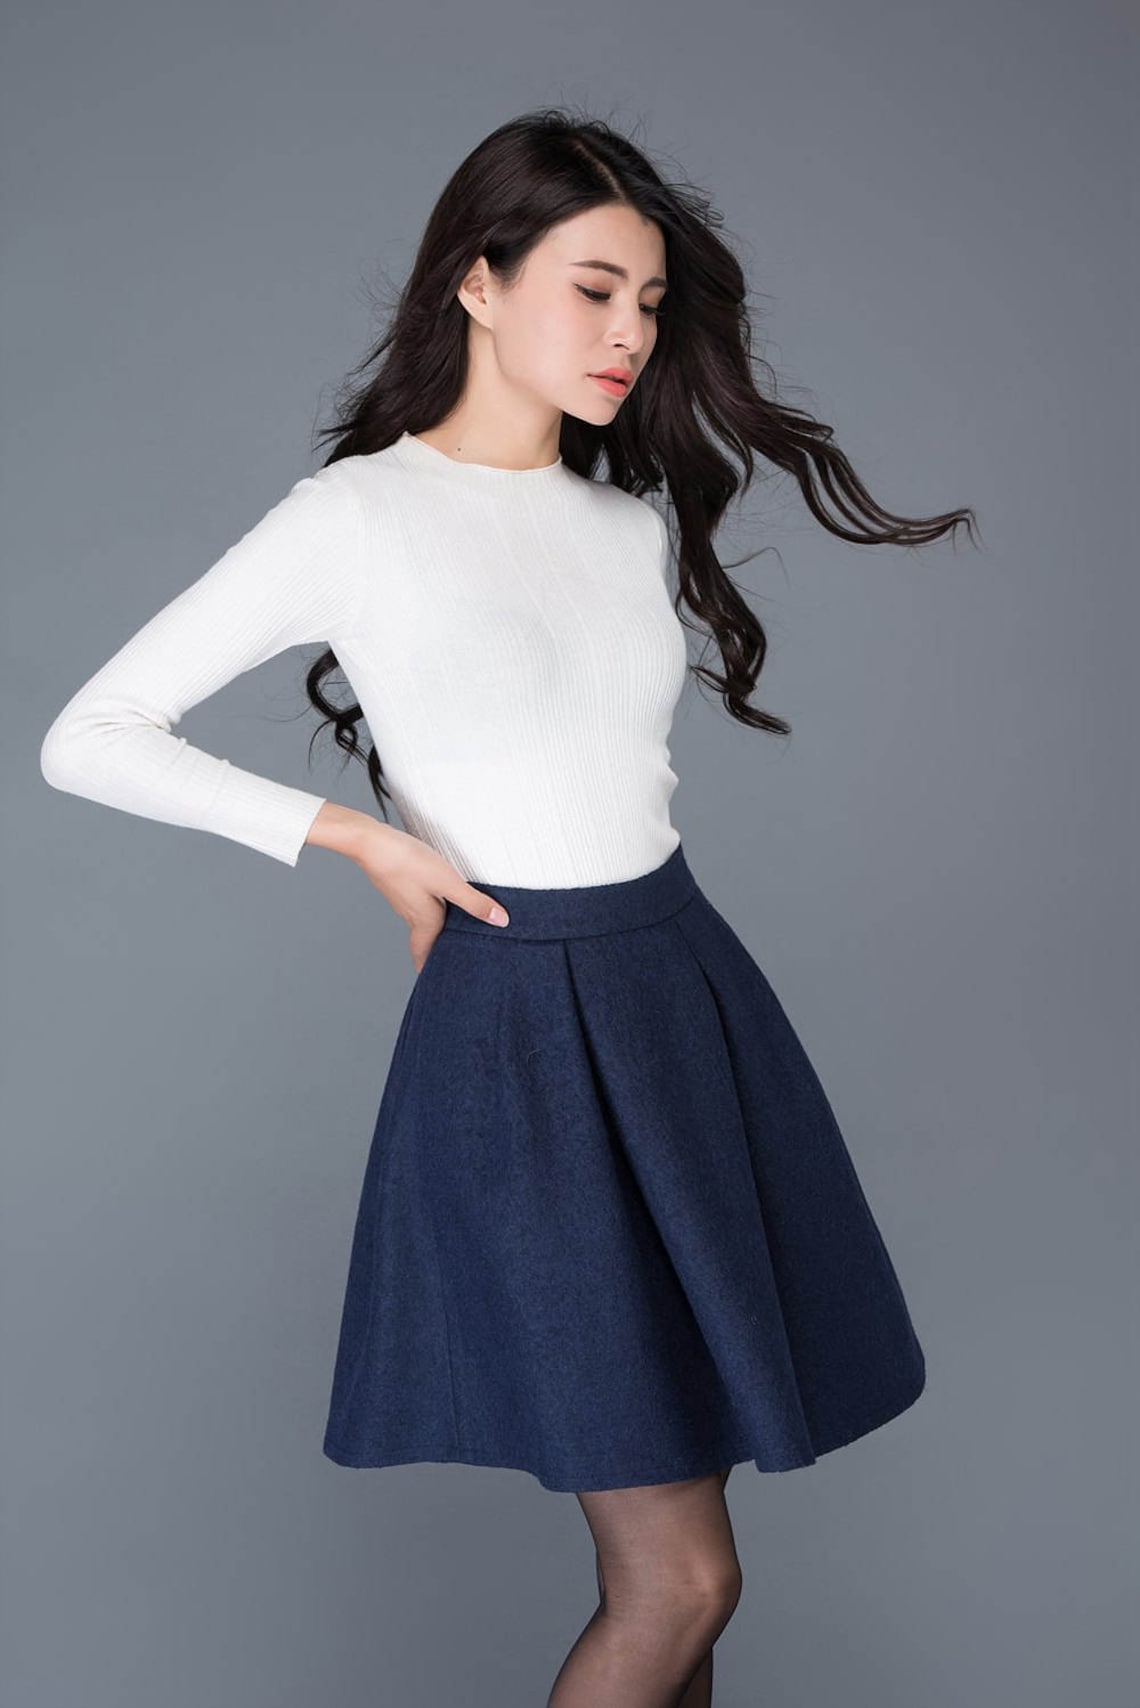 Mini Wool Skirt Blue Wool Skirt Womens Skirt Short Wool - Etsy